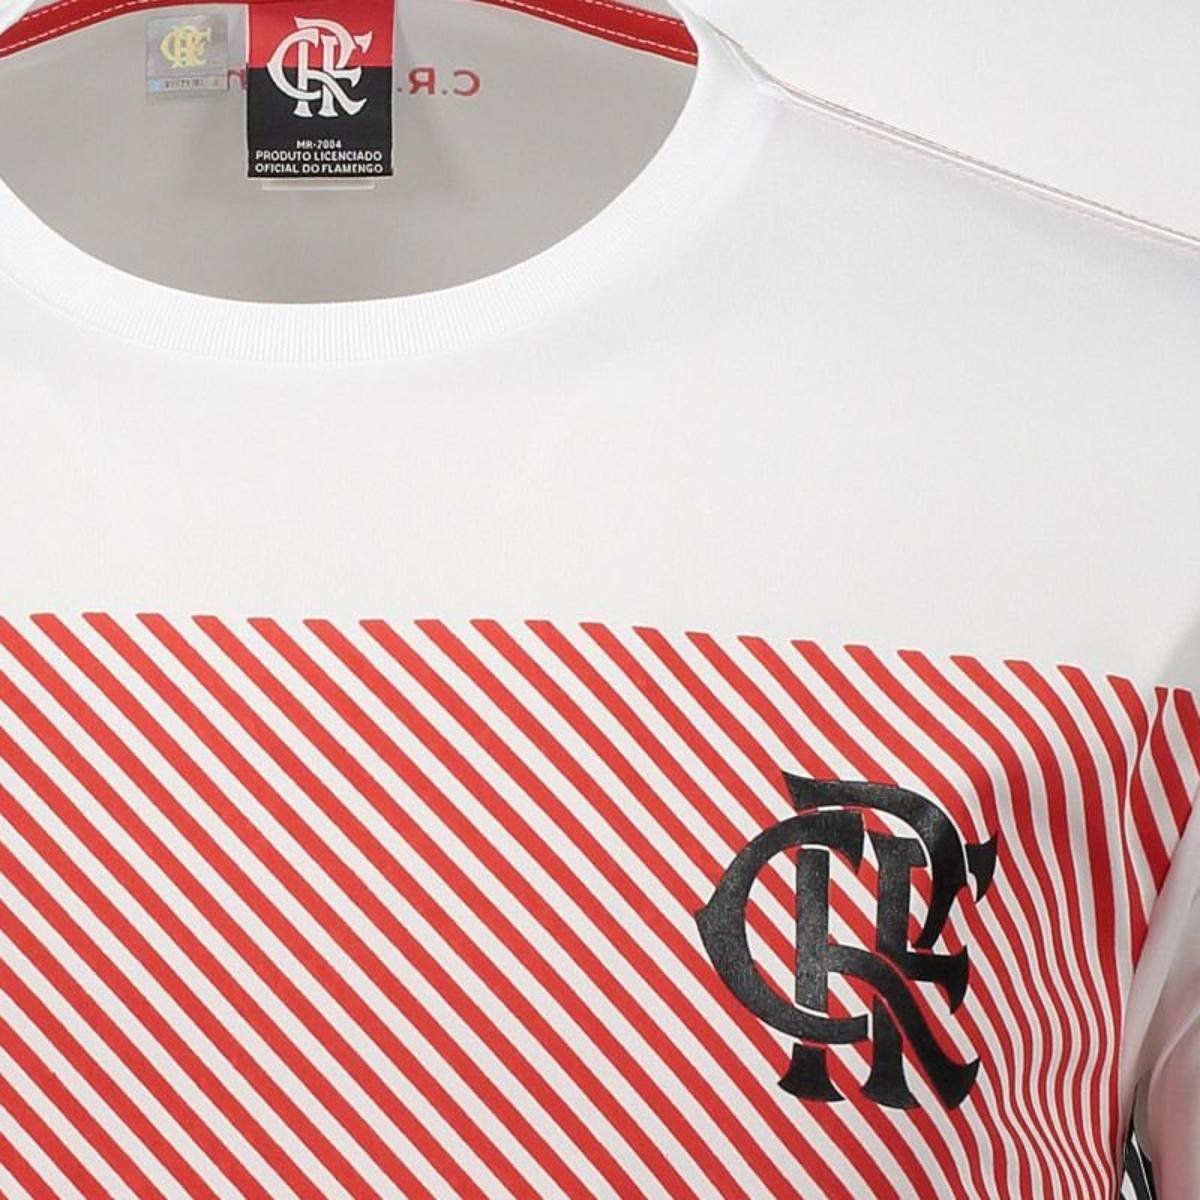 Camisa Braziline Flamengo Graphic - Masculino - Branco e Vermelho